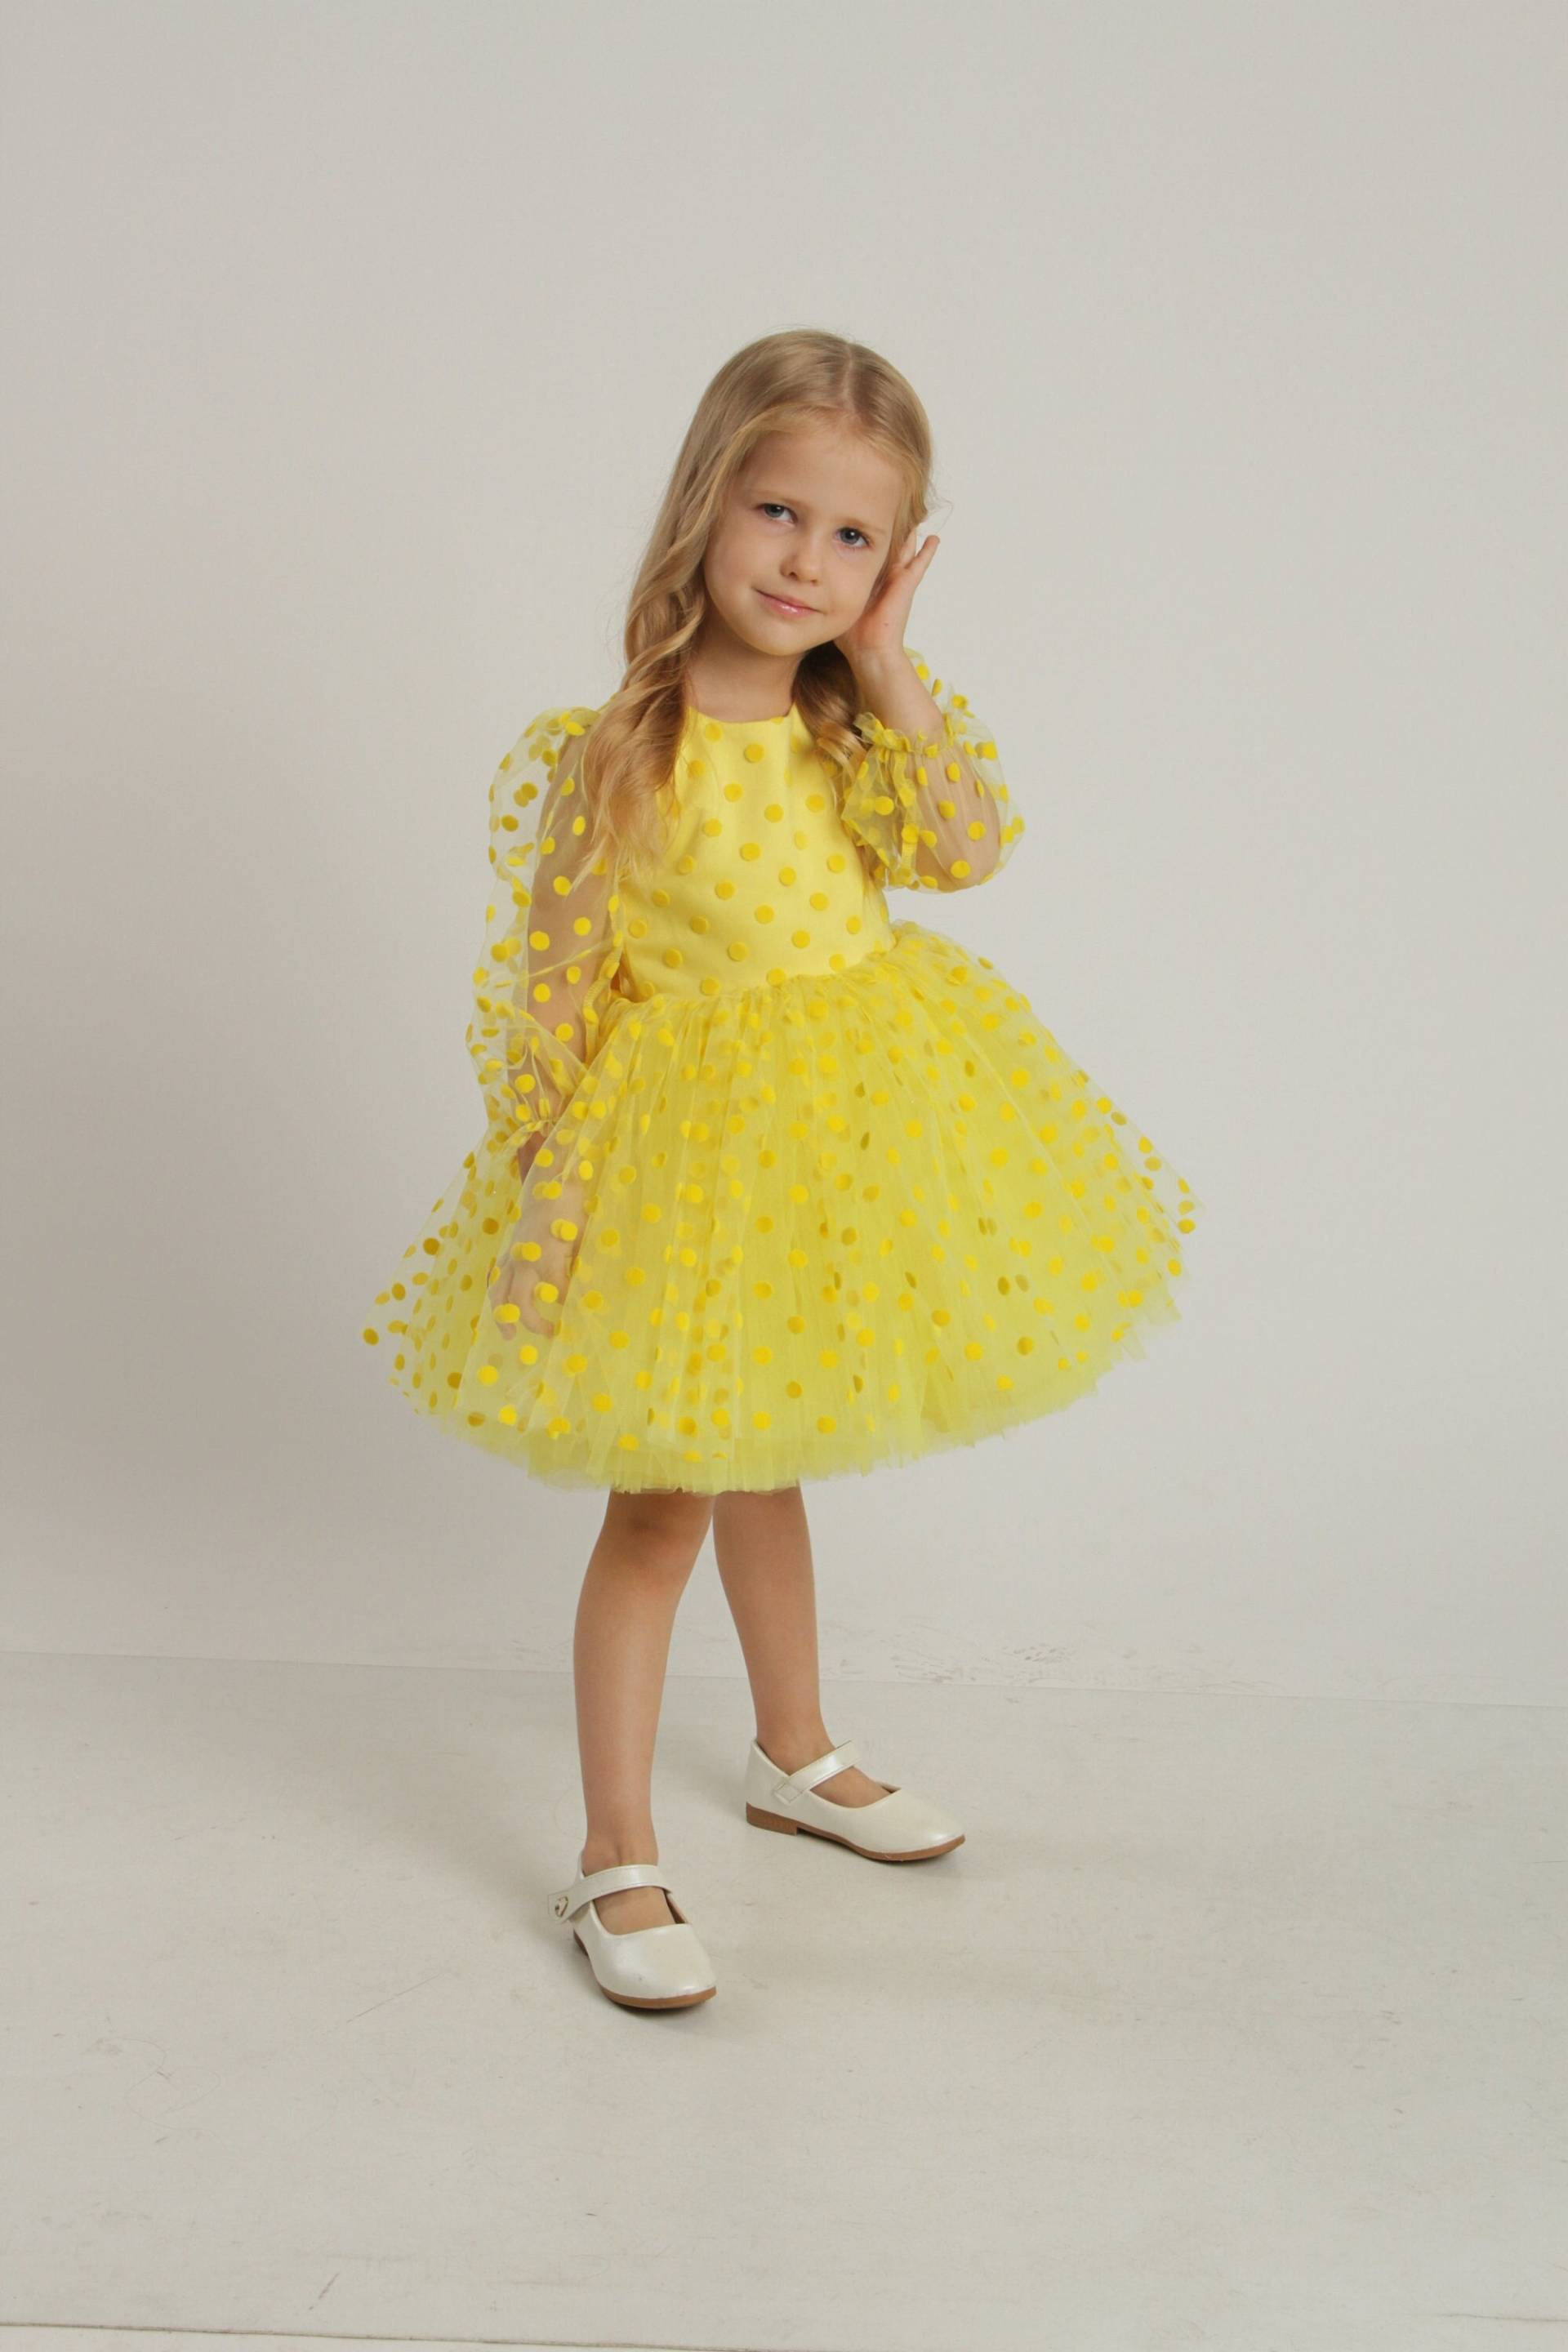 Gelbes Kleid Polka Dot Gelb Baby Erster Geburtstag Outfit Mädchen Kleinkind Party Kostüm Blumenmädchen von LilsBrand